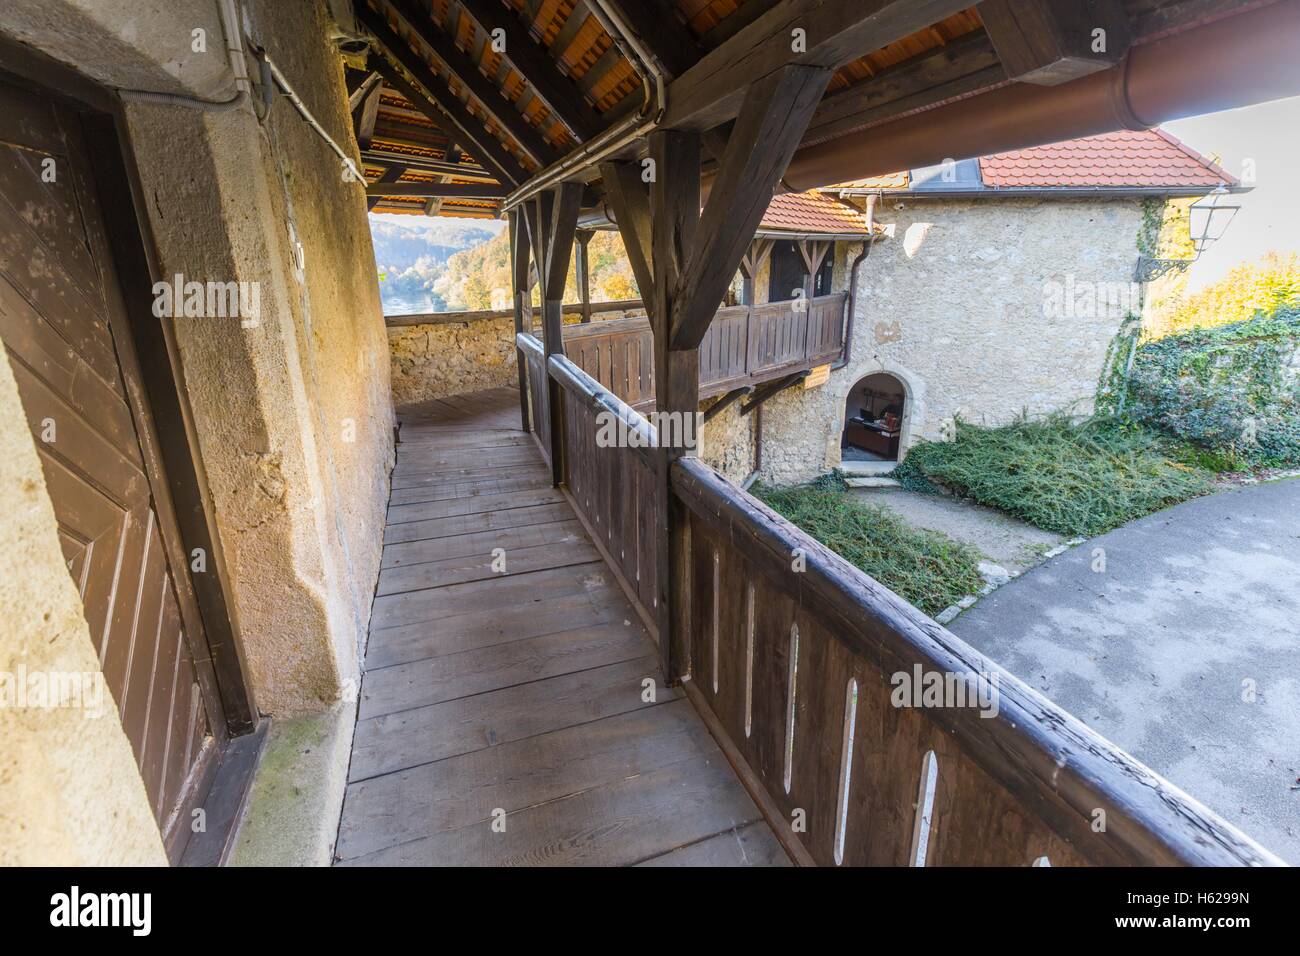 Ozalj medieval old town in Croatia near Karlovac preserved restored Stock Photo